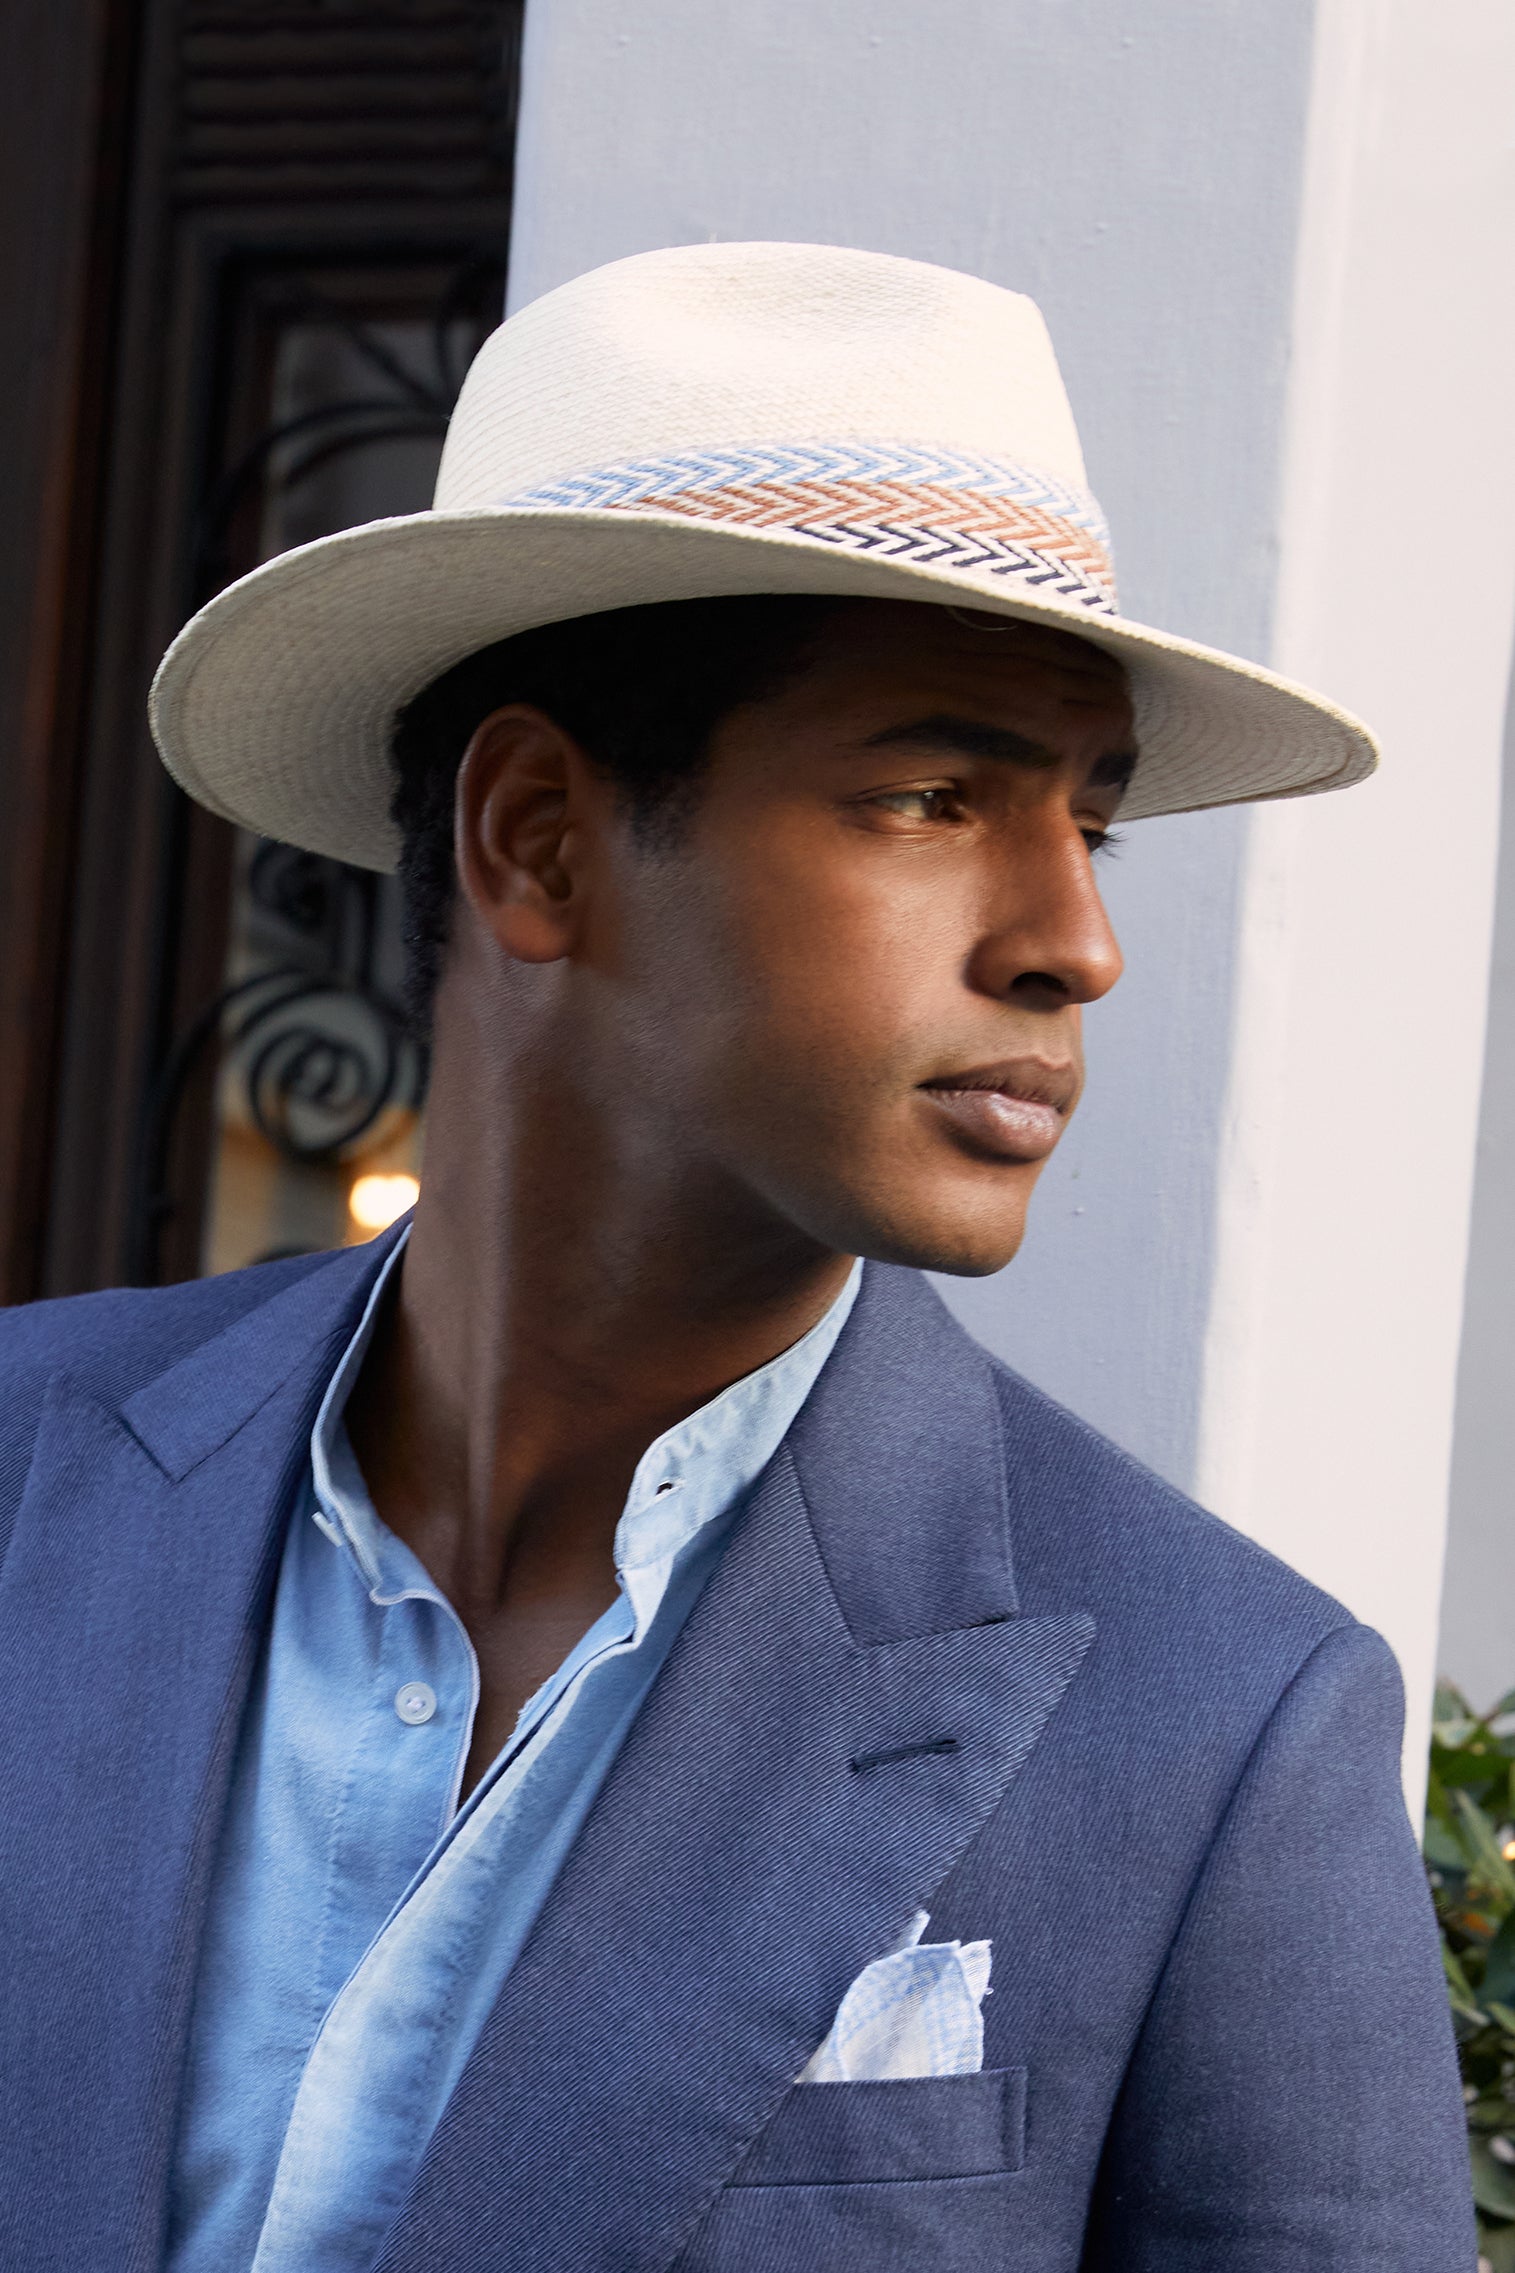 Panama Hats for Men & Women from Lock & Co. Hatters UK